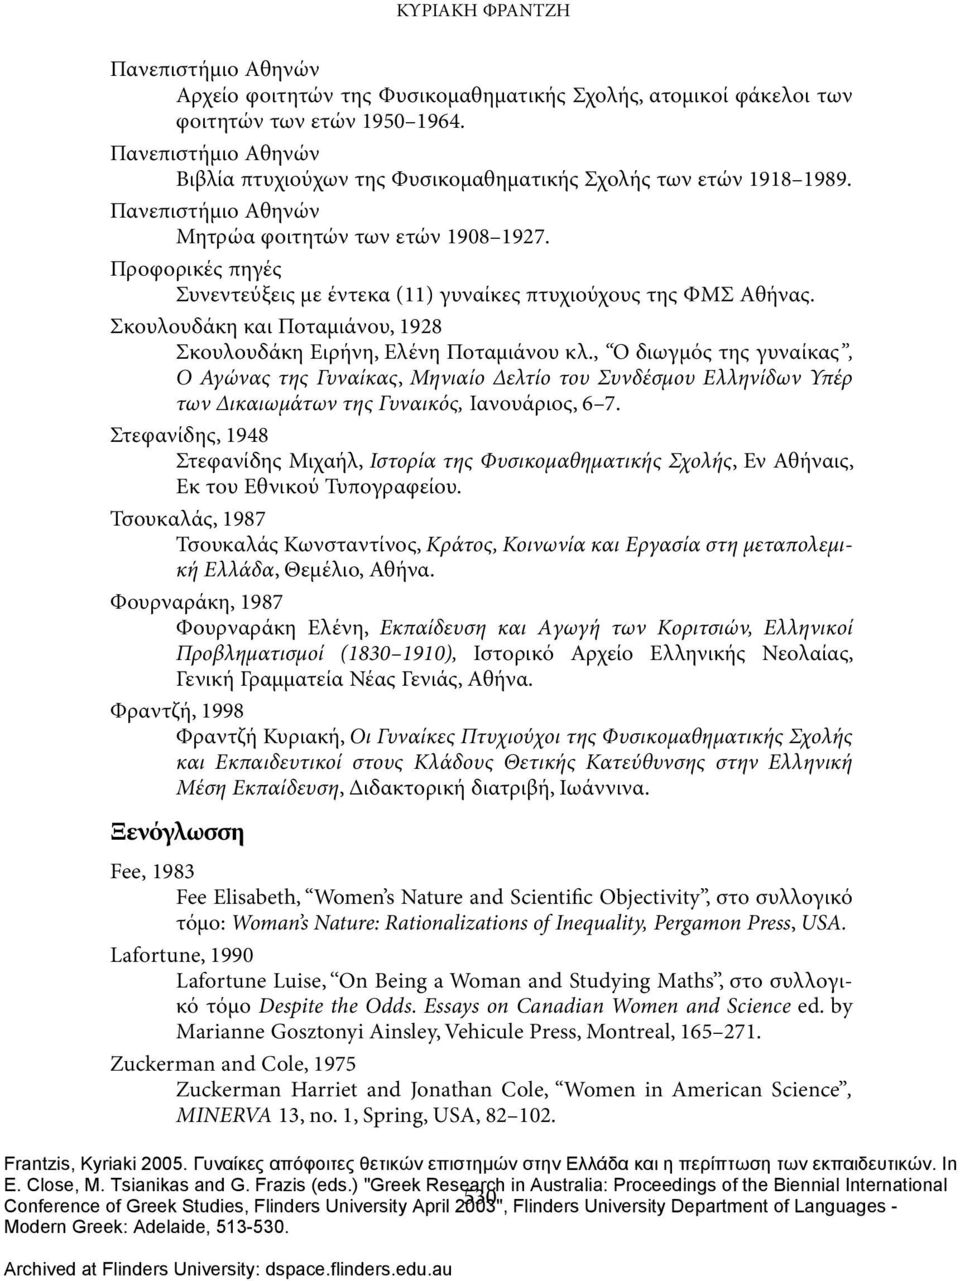 Προφορικές πηγές Συνεντεύξεις με έντεκα (11) γυναίκες πτυχιούχους της ΦΜΣ Αθήνας. Σκουλουδάκη και Ποταμιάνου, 1928 Σκουλουδάκη Ειρήνη, Ελένη Ποταμιάνου κλ.